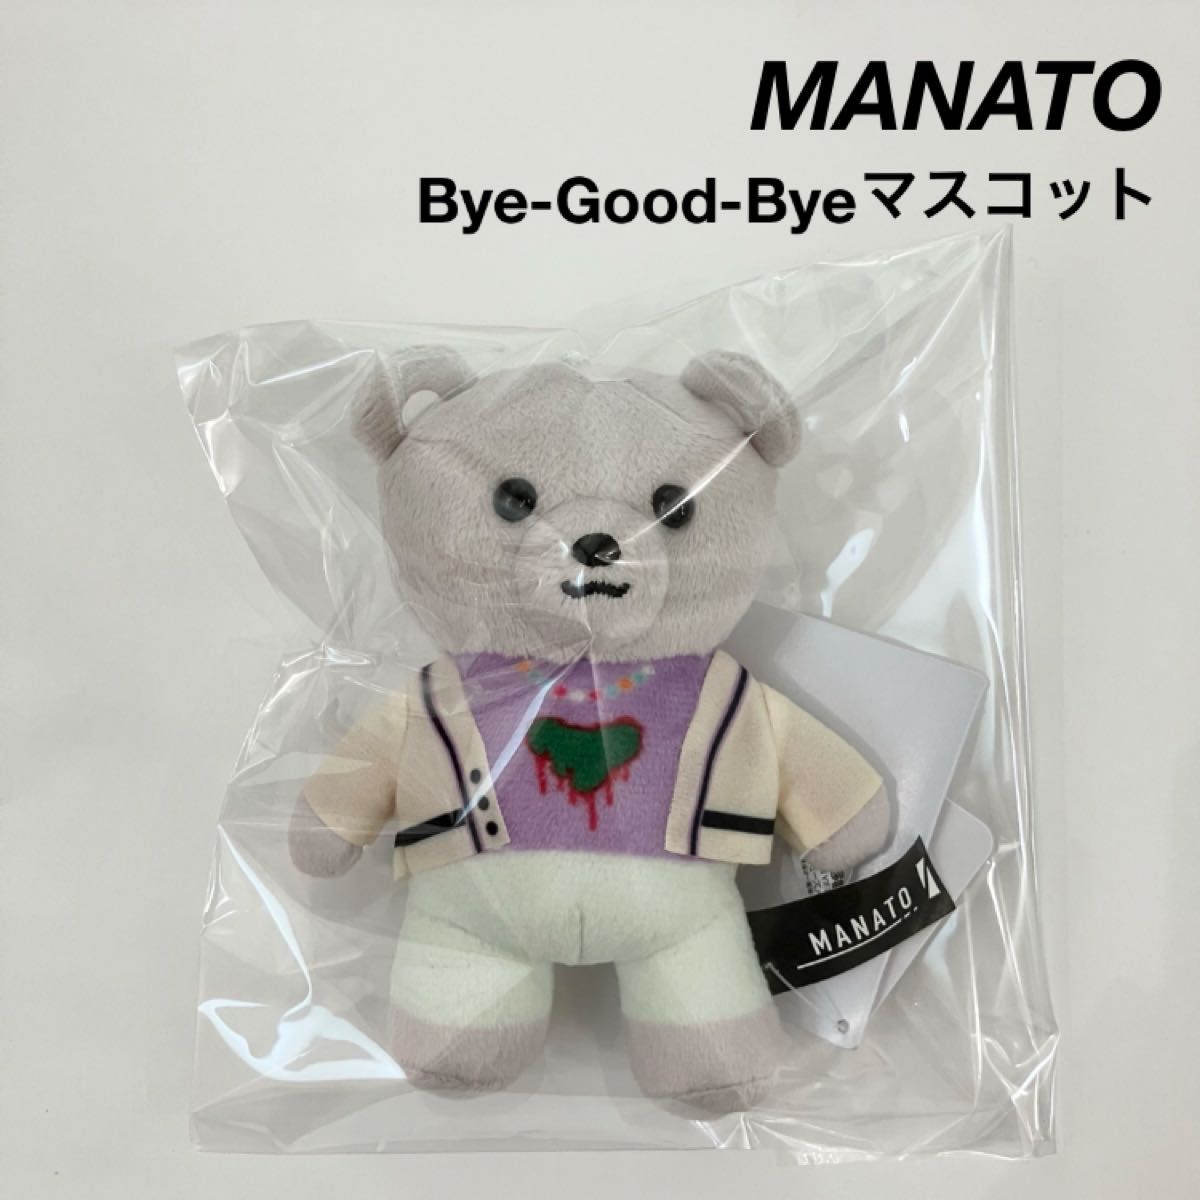 新品 BE:FIRST MANATO マナト モアプラスマスコット Bye-Good-Bye